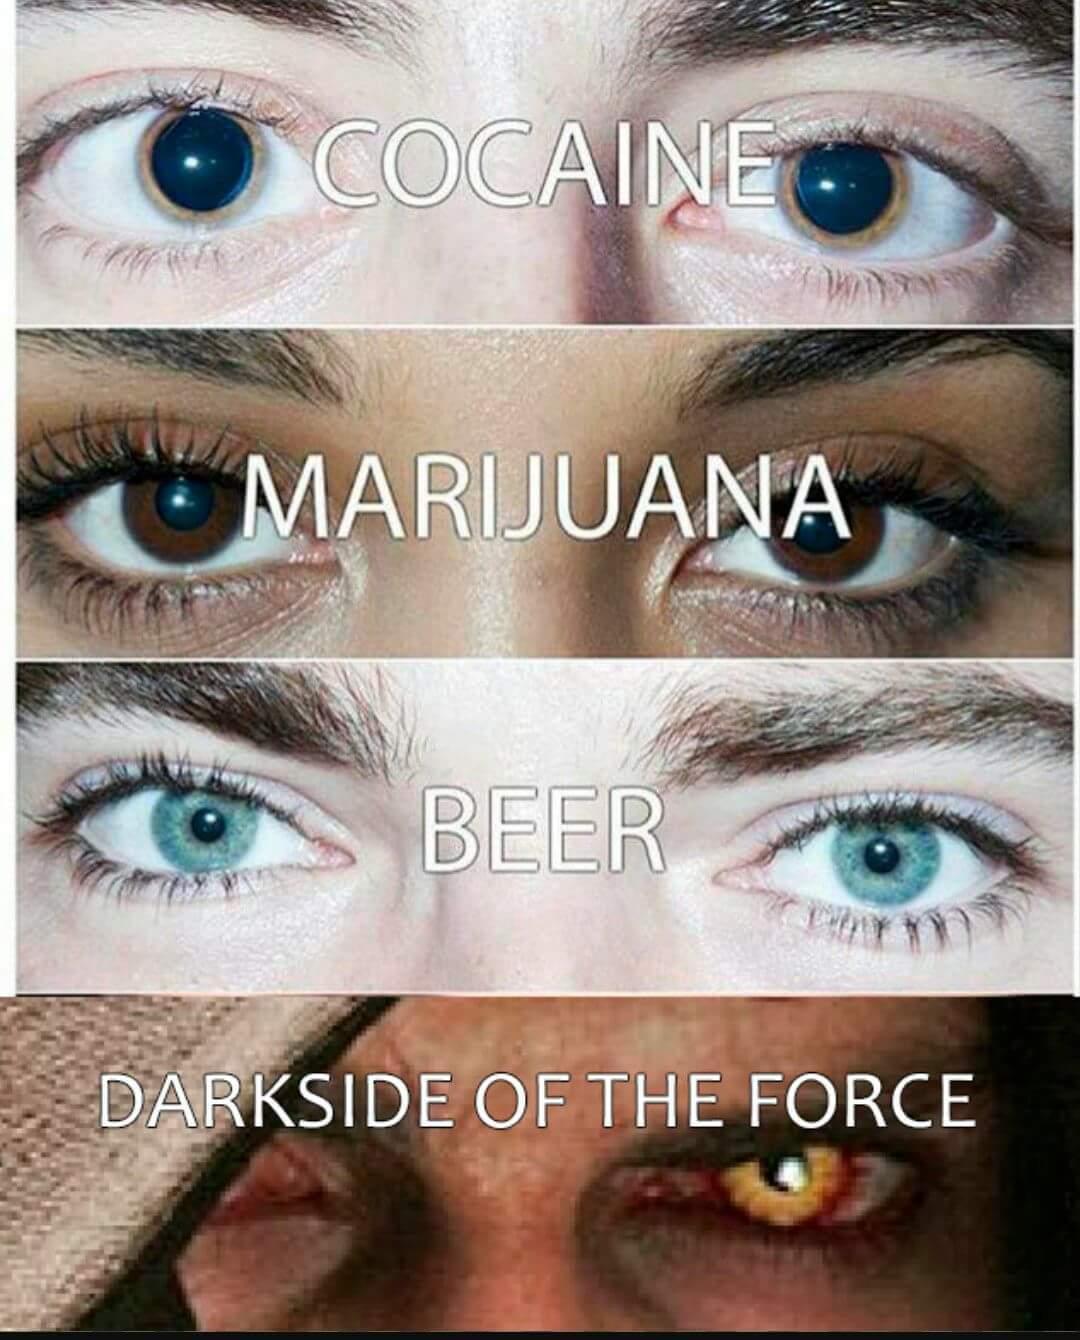 Feel The Power Of The Dark Side! - meme